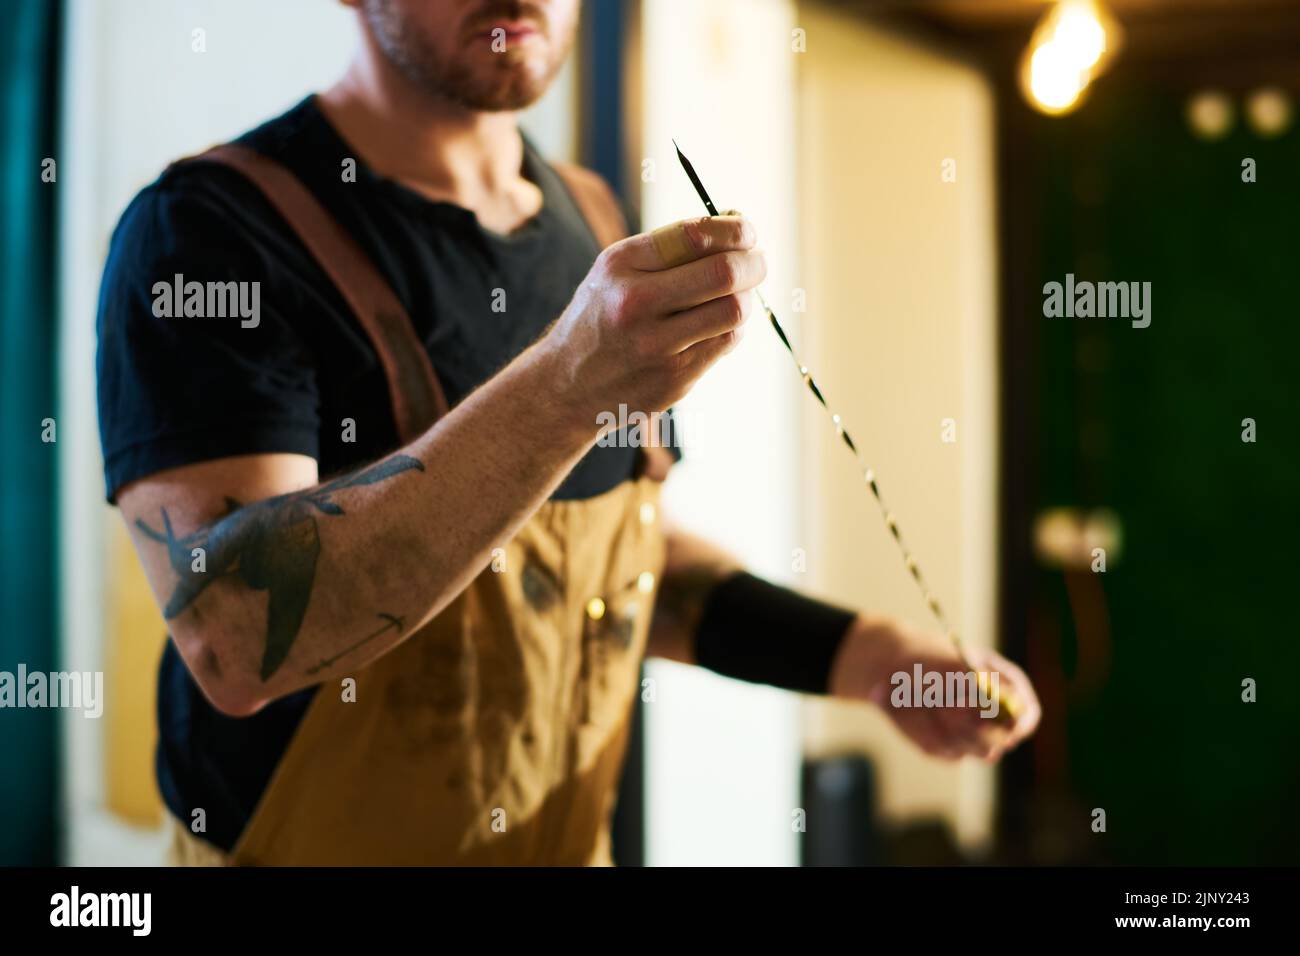 Técnico joven en el delantal que sostiene un alambre metálico afilado mientras prepara el instrumento de trabajo para comprobar el motor de un vehículo roto Foto de stock